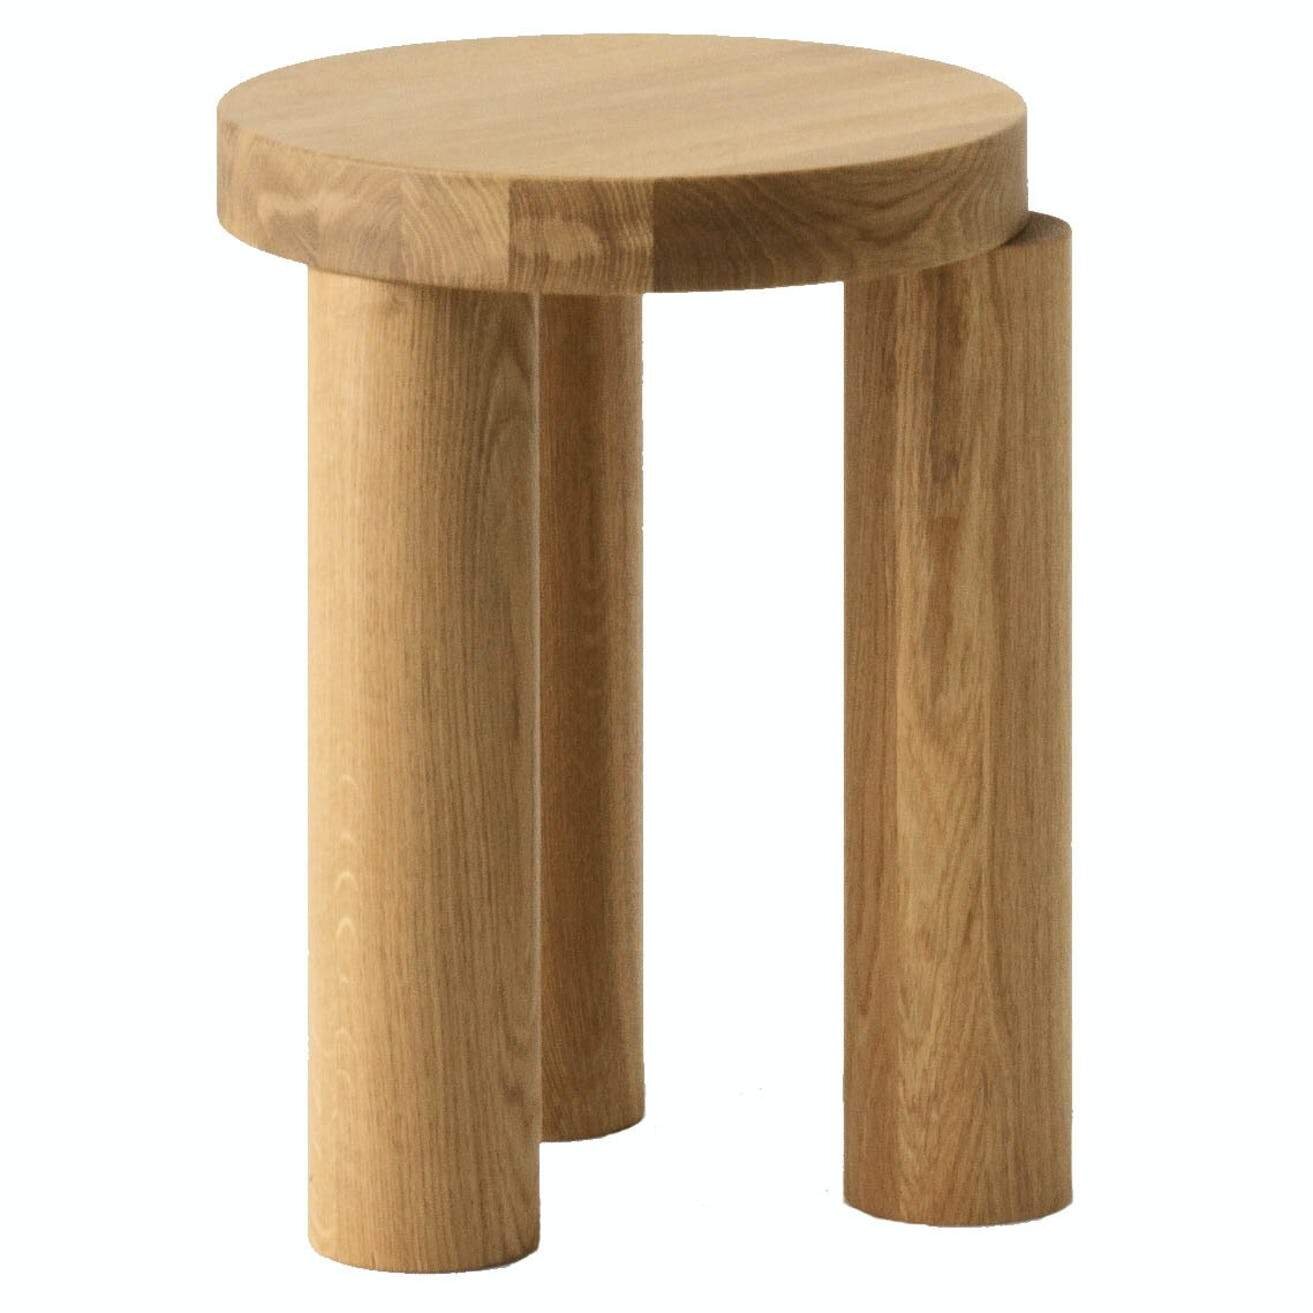 resident-furniture-offset-stool-haute-living_1400x.jpg